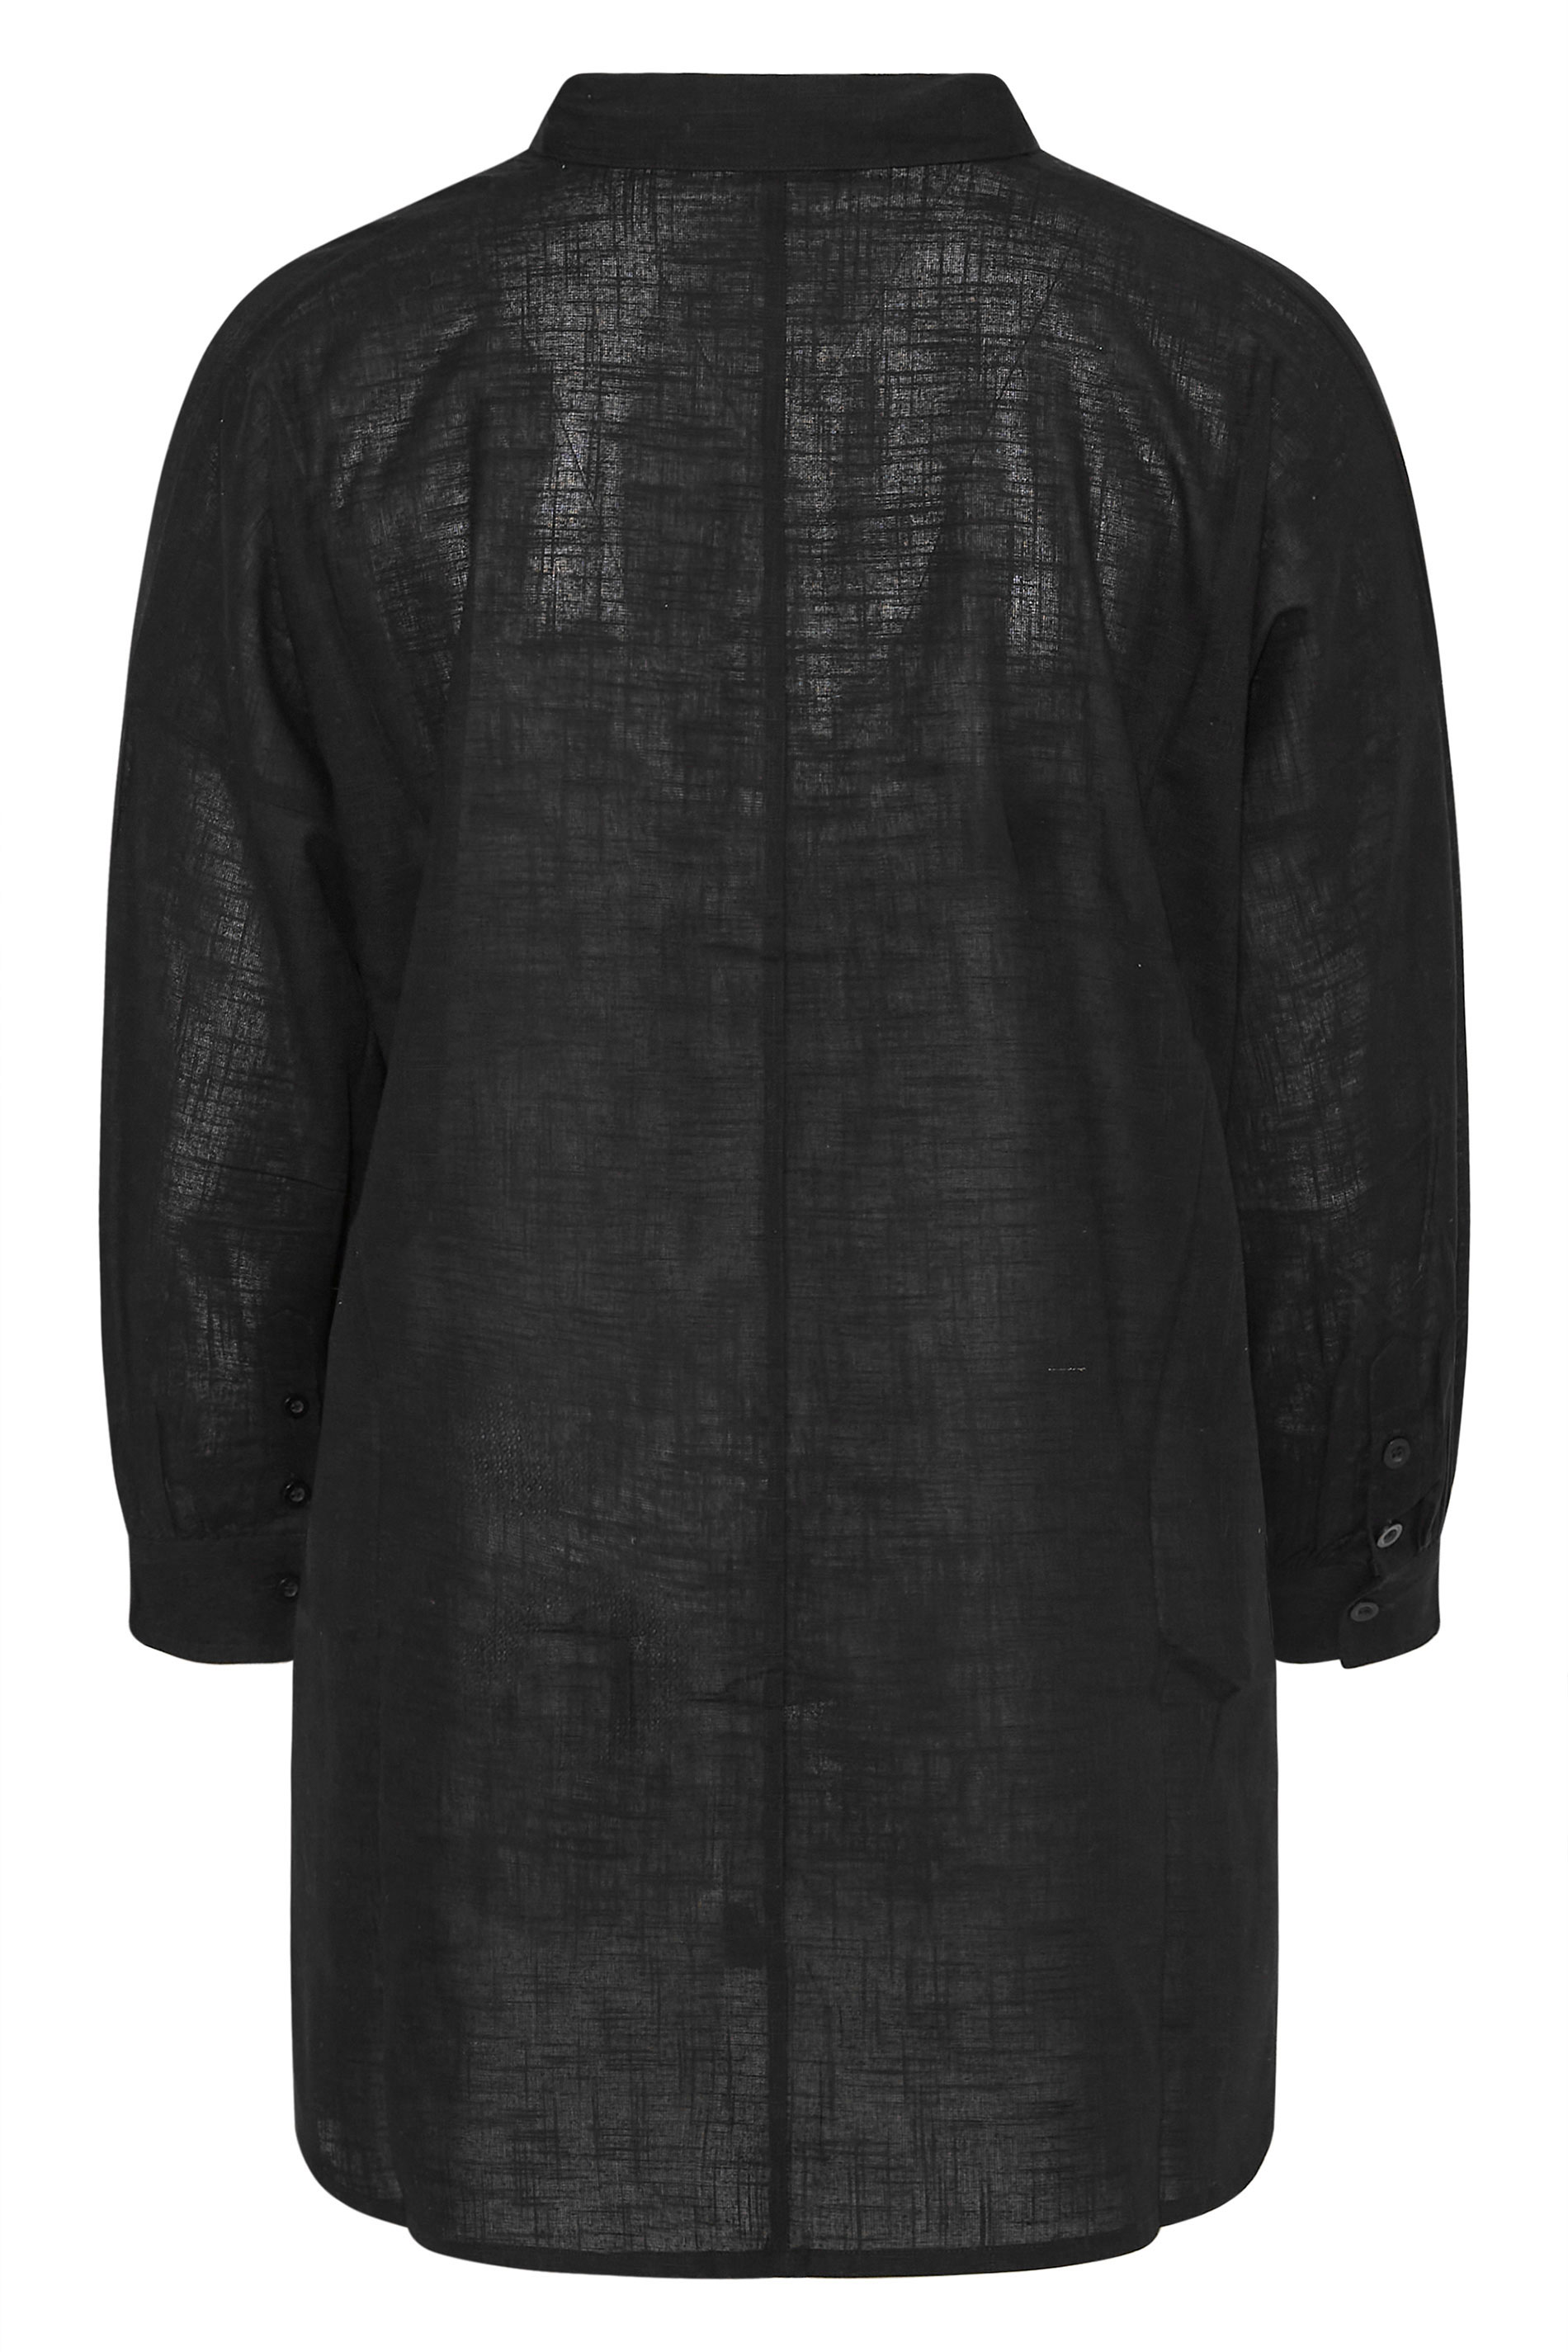 Grande taille  Vêtements de Plage Grande taille  Kimonos de Plage & Paréos | Chemisier de Plage Noir Oversize Manches Longues - GG48349